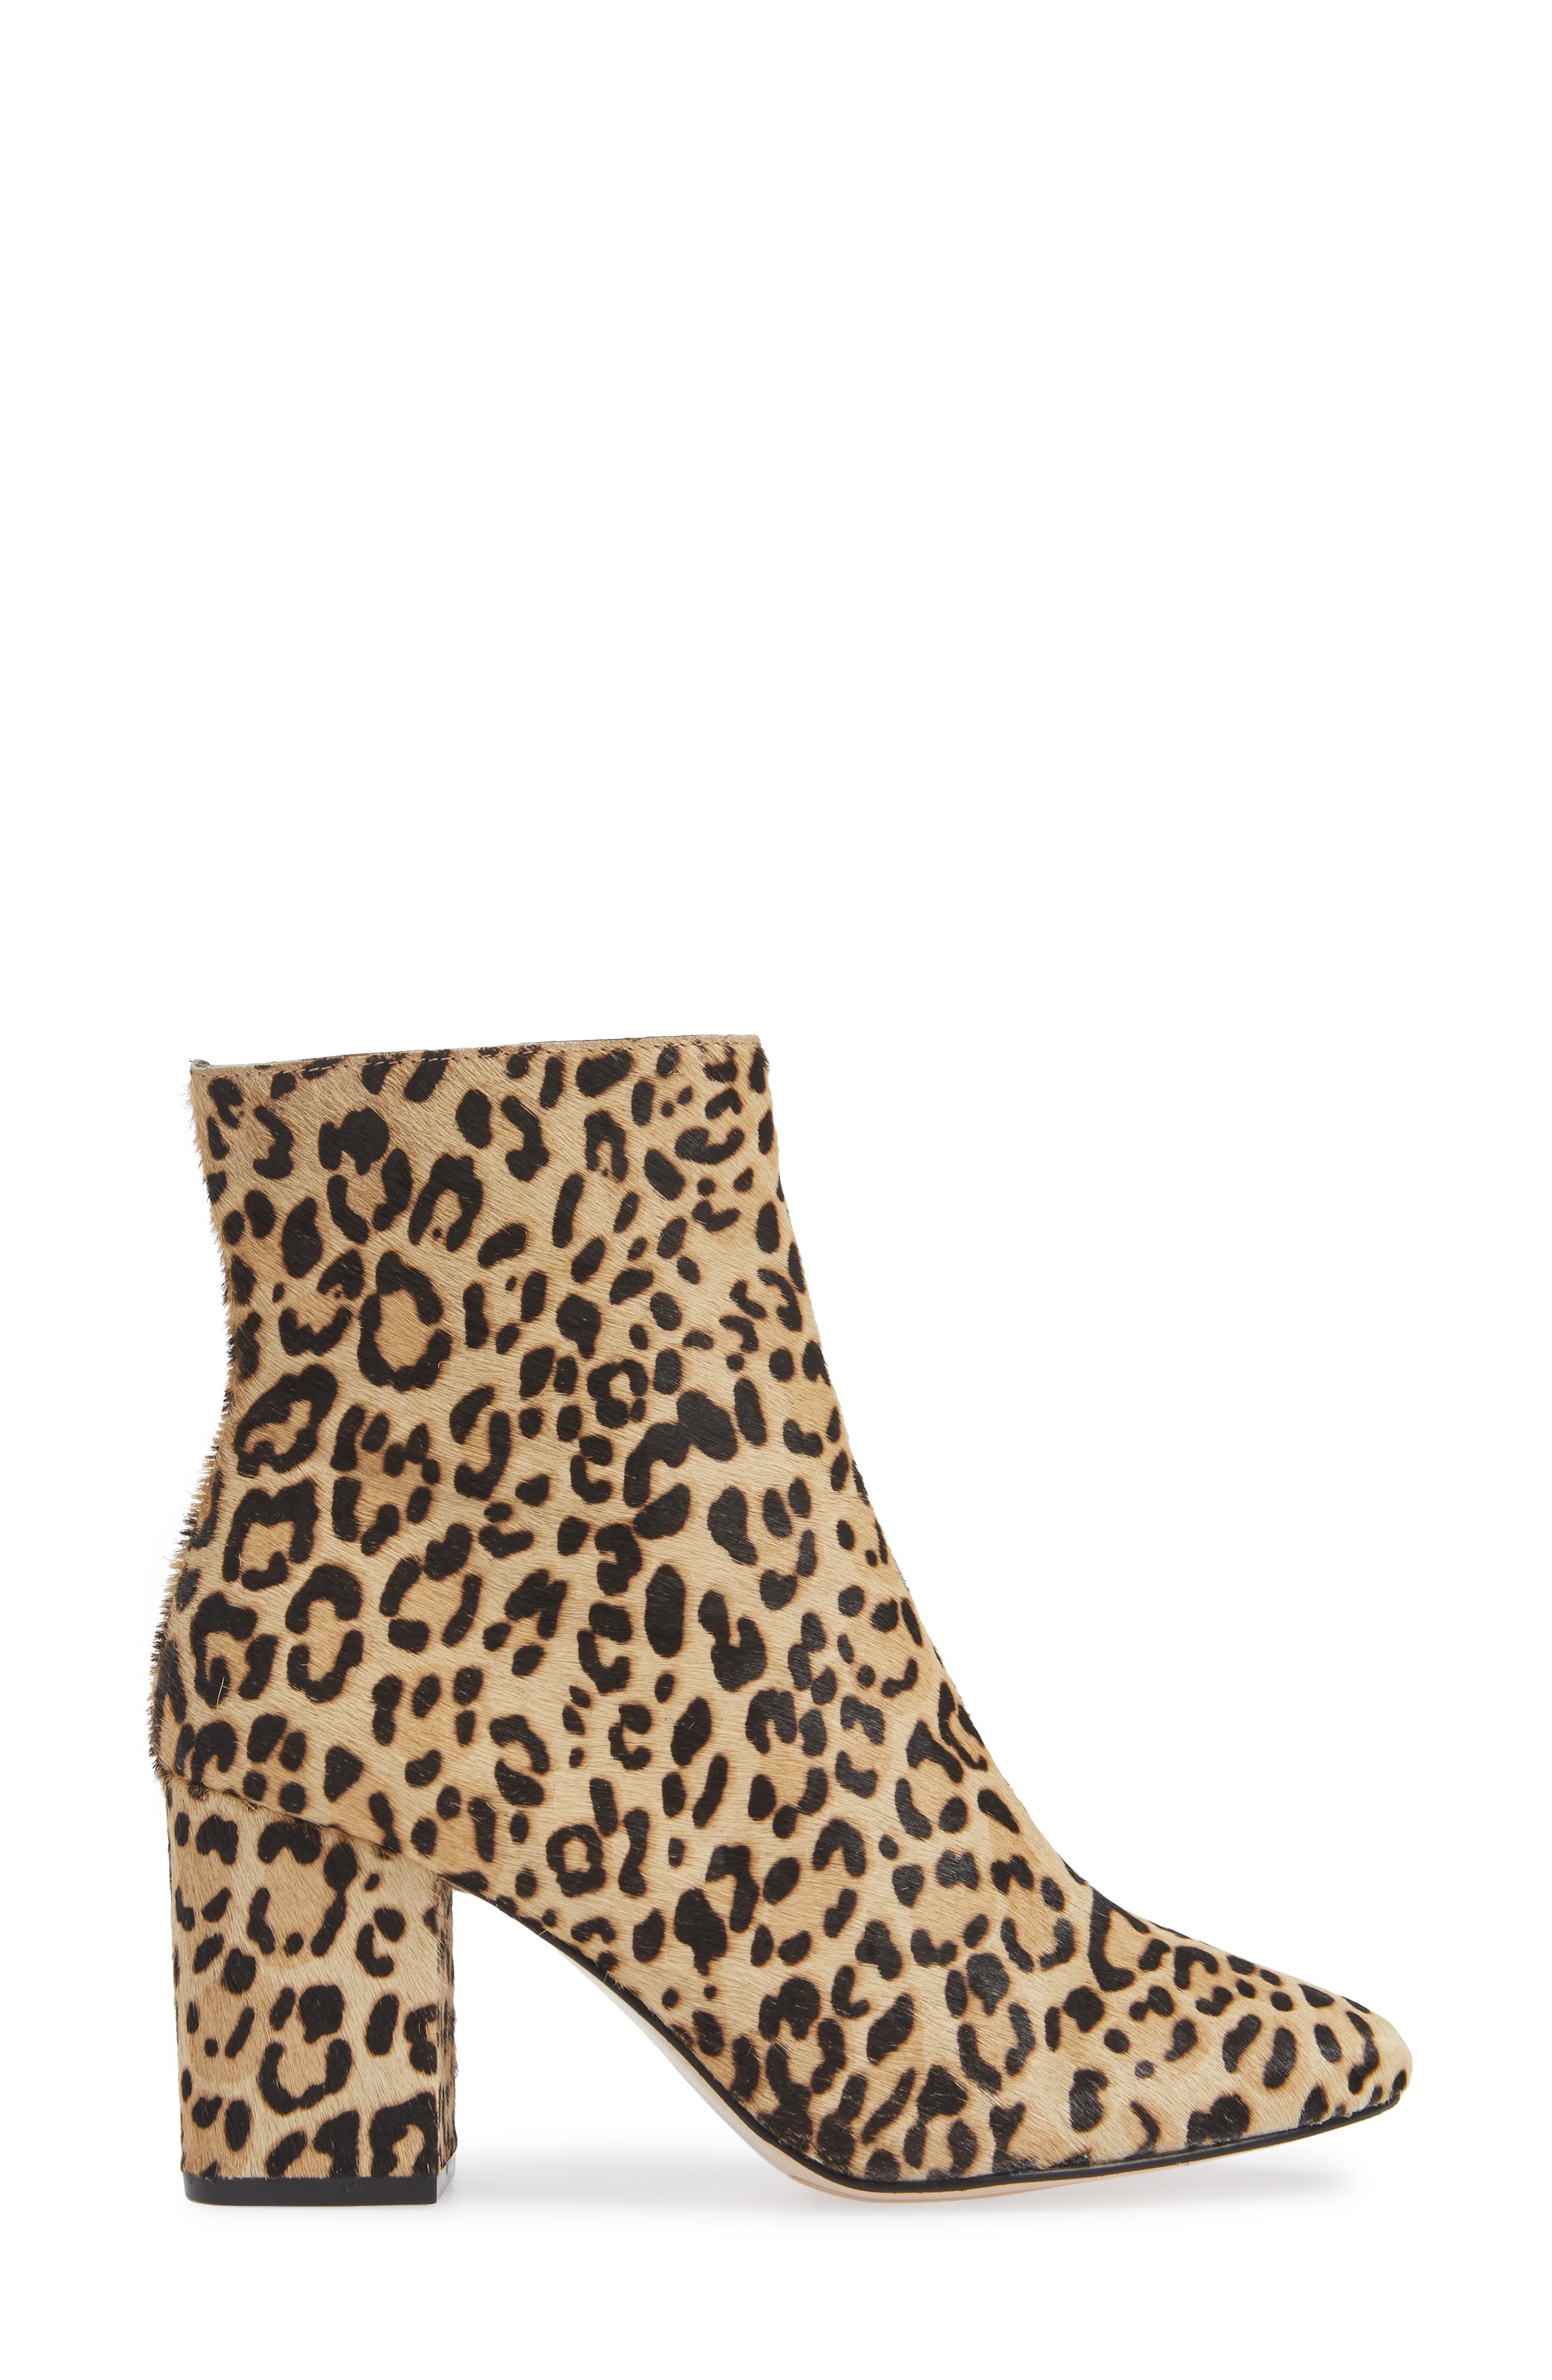 halogen leopard shoes